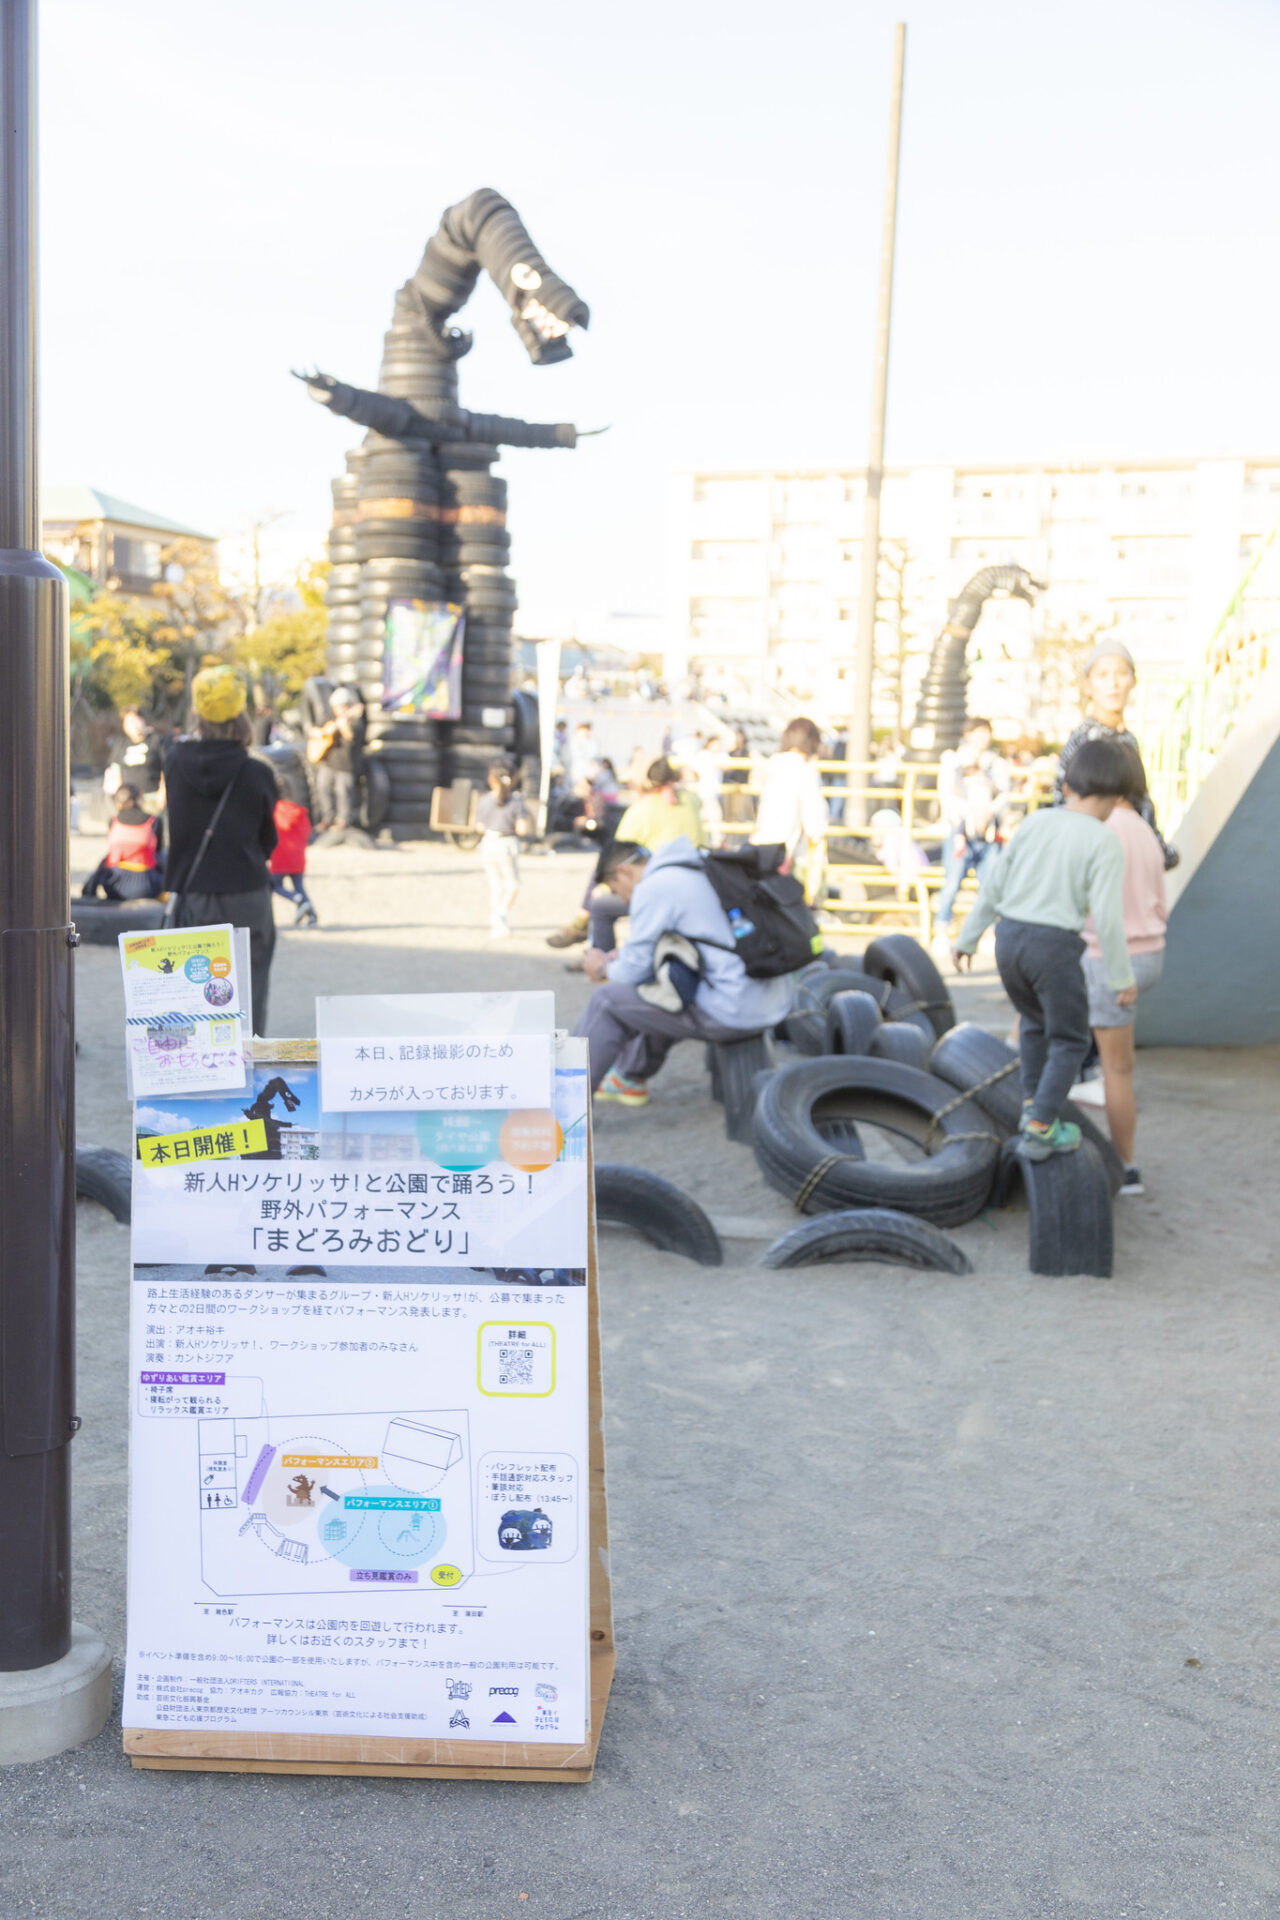 公園入り口には本日の看板。円形にはタイヤで作られた怪獣、遊具で遊ぶ子供たち